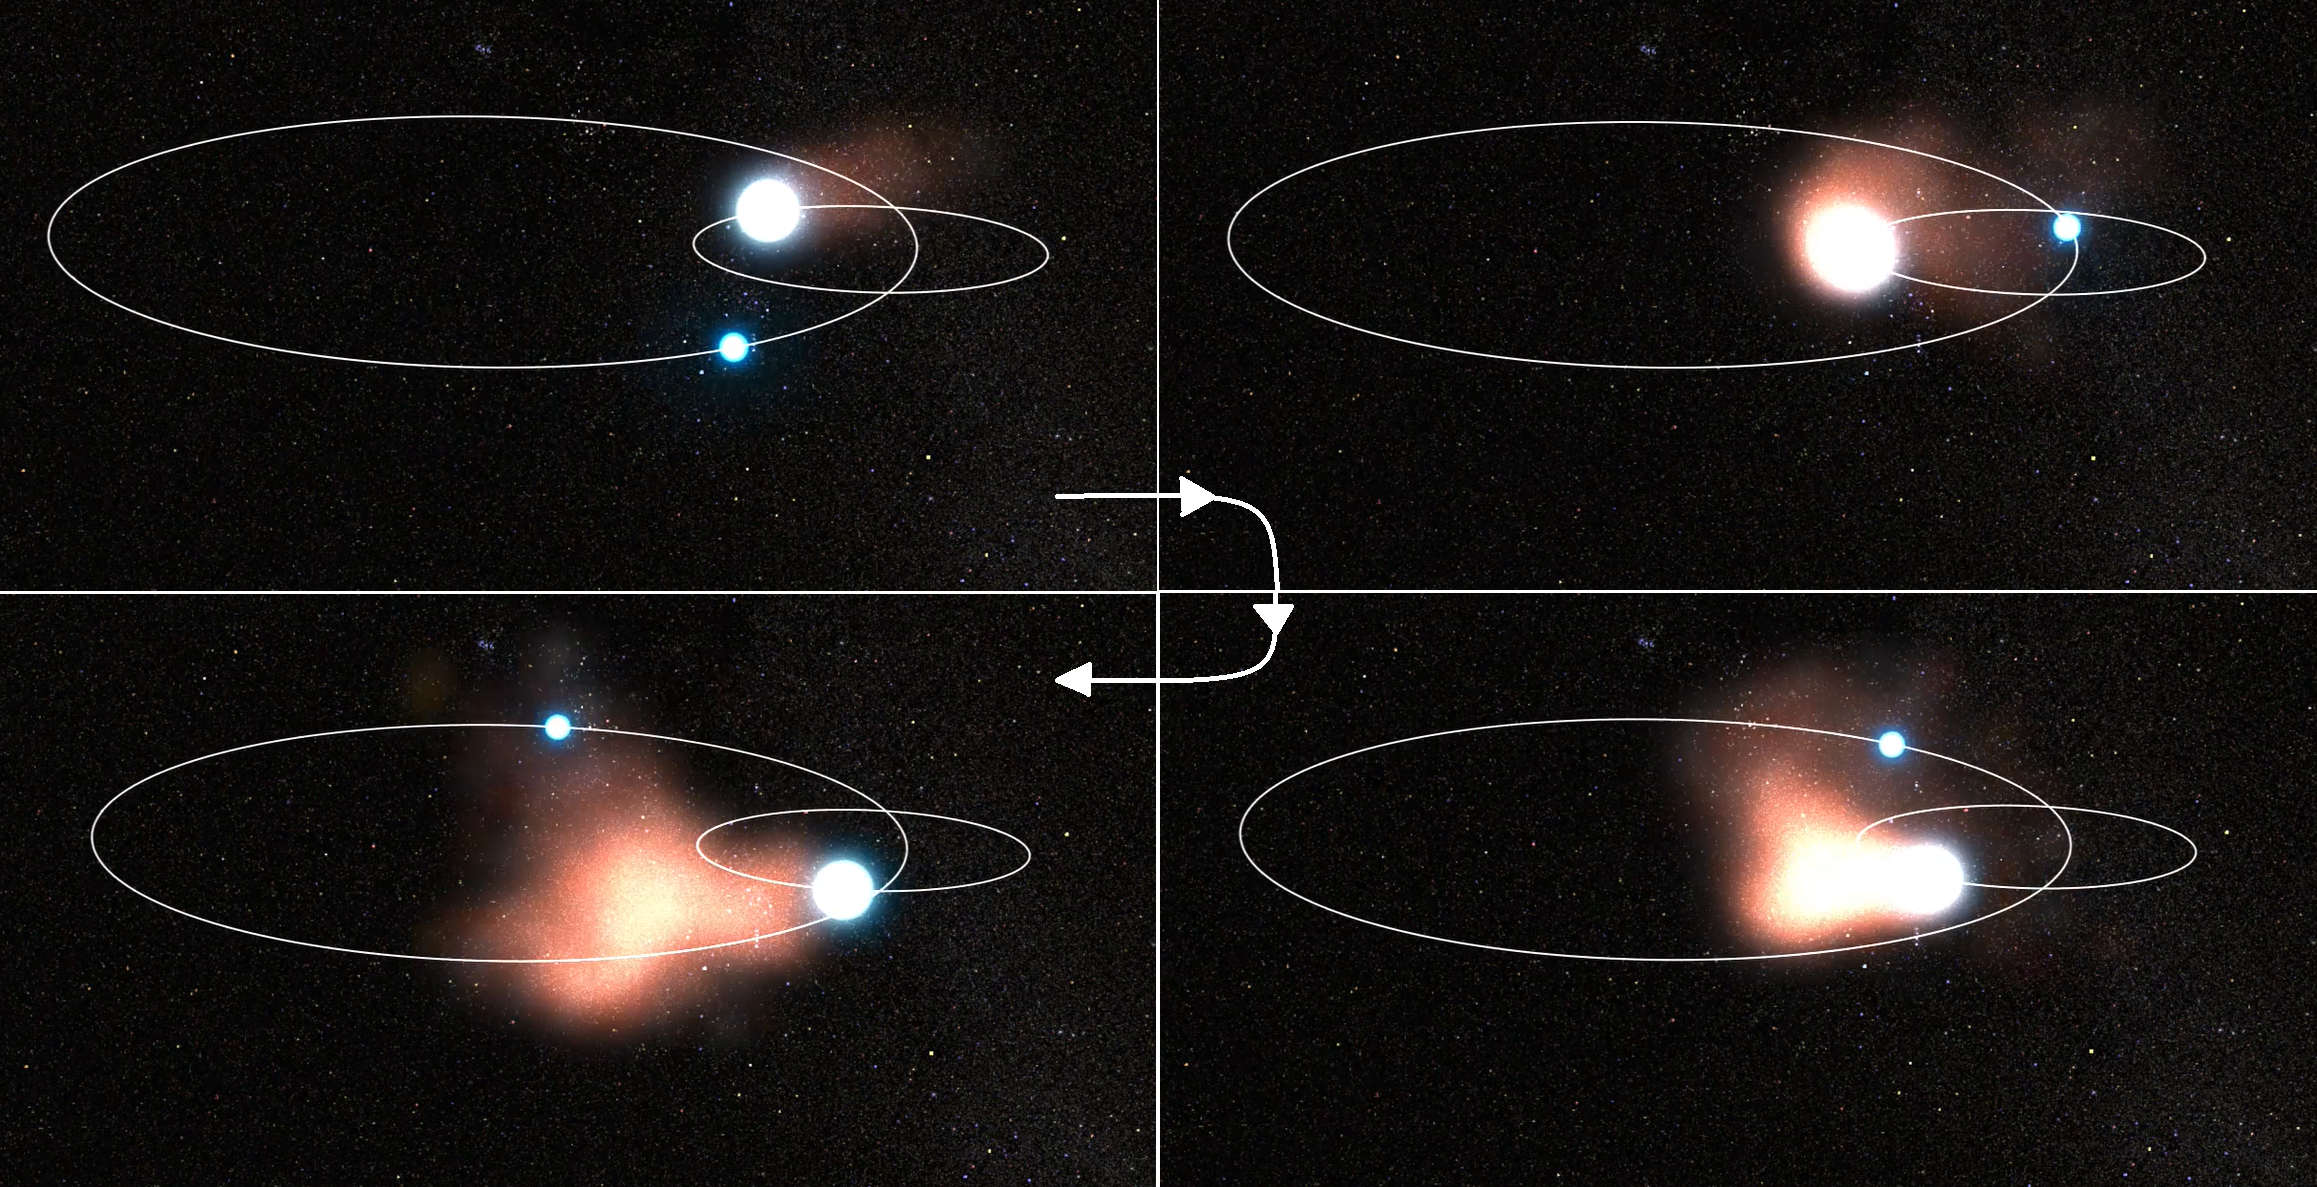 Seria widoków obrazujących powstawanie pyłu w układzie podwójnym WR 140, gdzie upływ czasu na rysunkach jest zgodny z ruchem wskazówek zegara. Jest to widok z góry na płaszczyznę orbity. W tym układzie gwiazda typu Wolfa-Rayeta (czyli gęste jądro „starzejącej się” gwiazdy masywnej) i gwiazda typu widmowego O krążą wokół wspólnego środka masy po silnie eliptycznych orbitach, a ich wiatry gwiazdowe zderzają się, gdy gwiazdy zbliżą się. Wymieszana materia jest głównie wydmuchiwana w stronę gwiazdy O i po schłodzeniu wytwarza się pył. Zgodnie z prawami mechaniki, gwiazda Wolfa-Rayeta krąży po trzykrotnie większej orbicie niż gwiazda O, ponieważ jej masa jest około trzy razy mniejsza (~10Mʘ/30Mʘ). Pełną animację ruchu orbitalnego układu WR 140 można obejrzeć tutaj. Oprac. na podstawie filmu NASA, ESA, Joseph Olmsted (STScI)